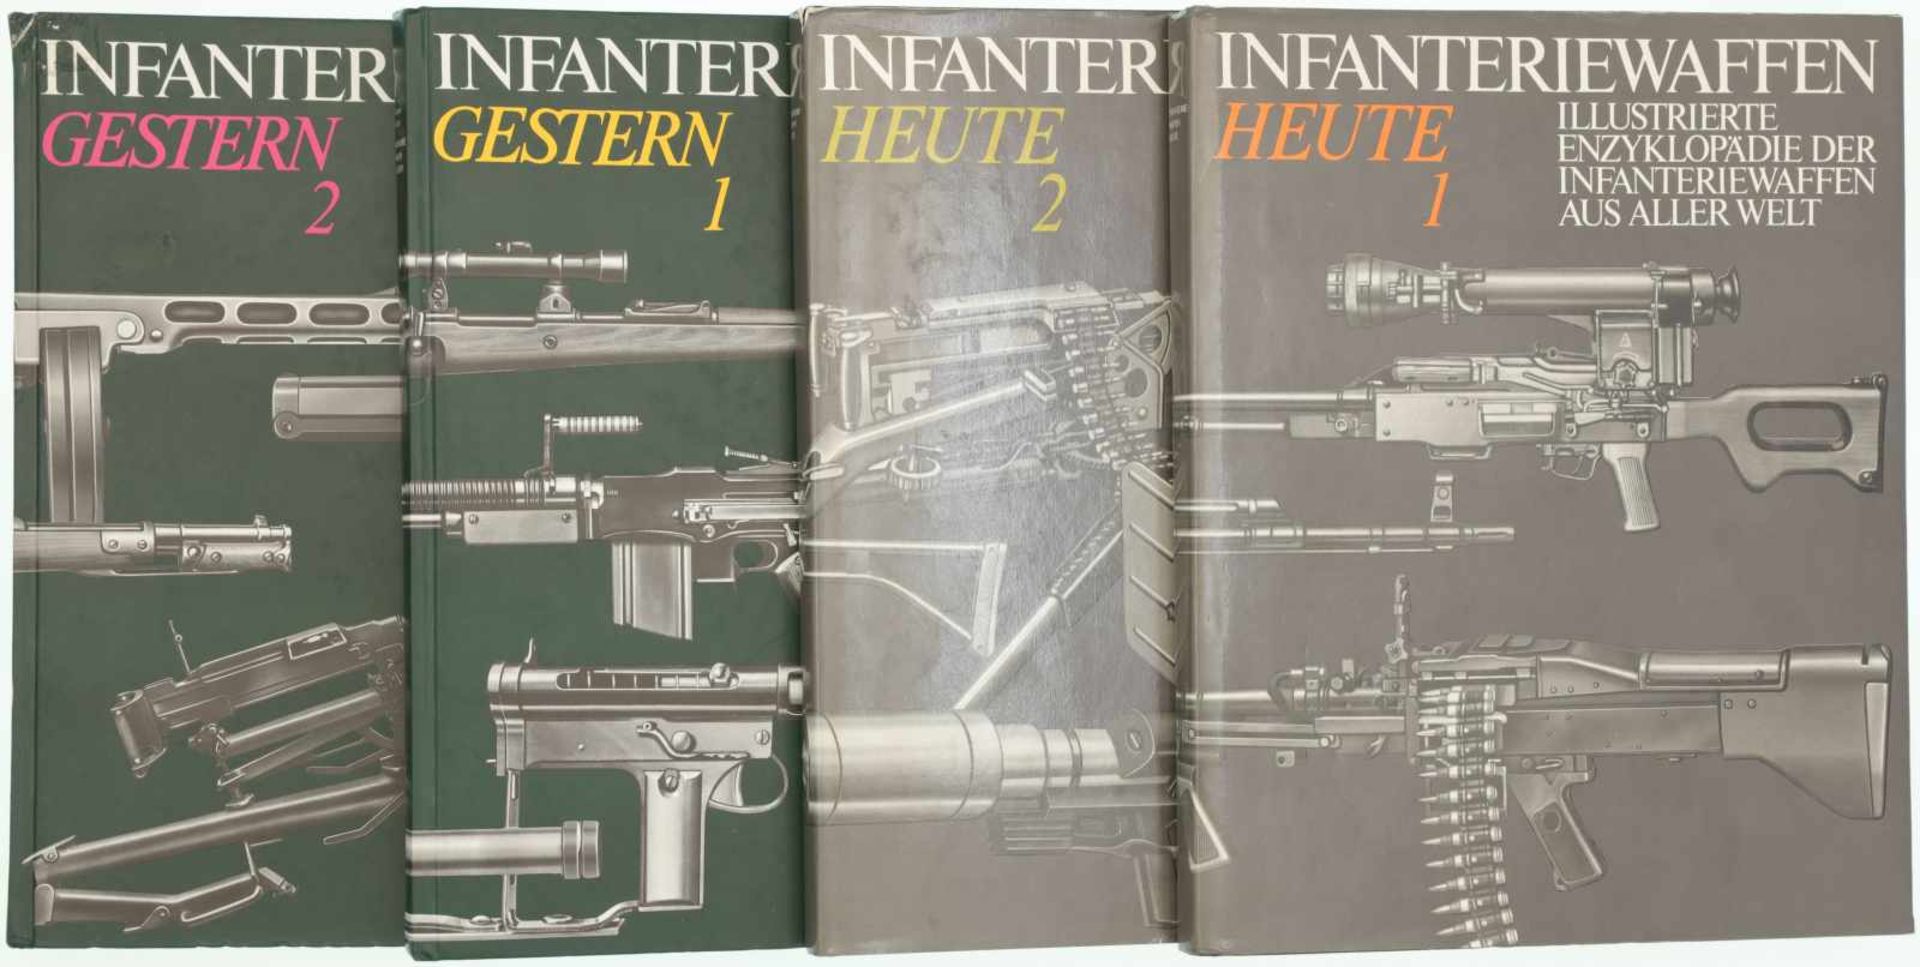 Konvolut 4 Bücher "Infanteriewaffen", Illustrierte Enzyklopädie der Infanteriewaffen aus aller